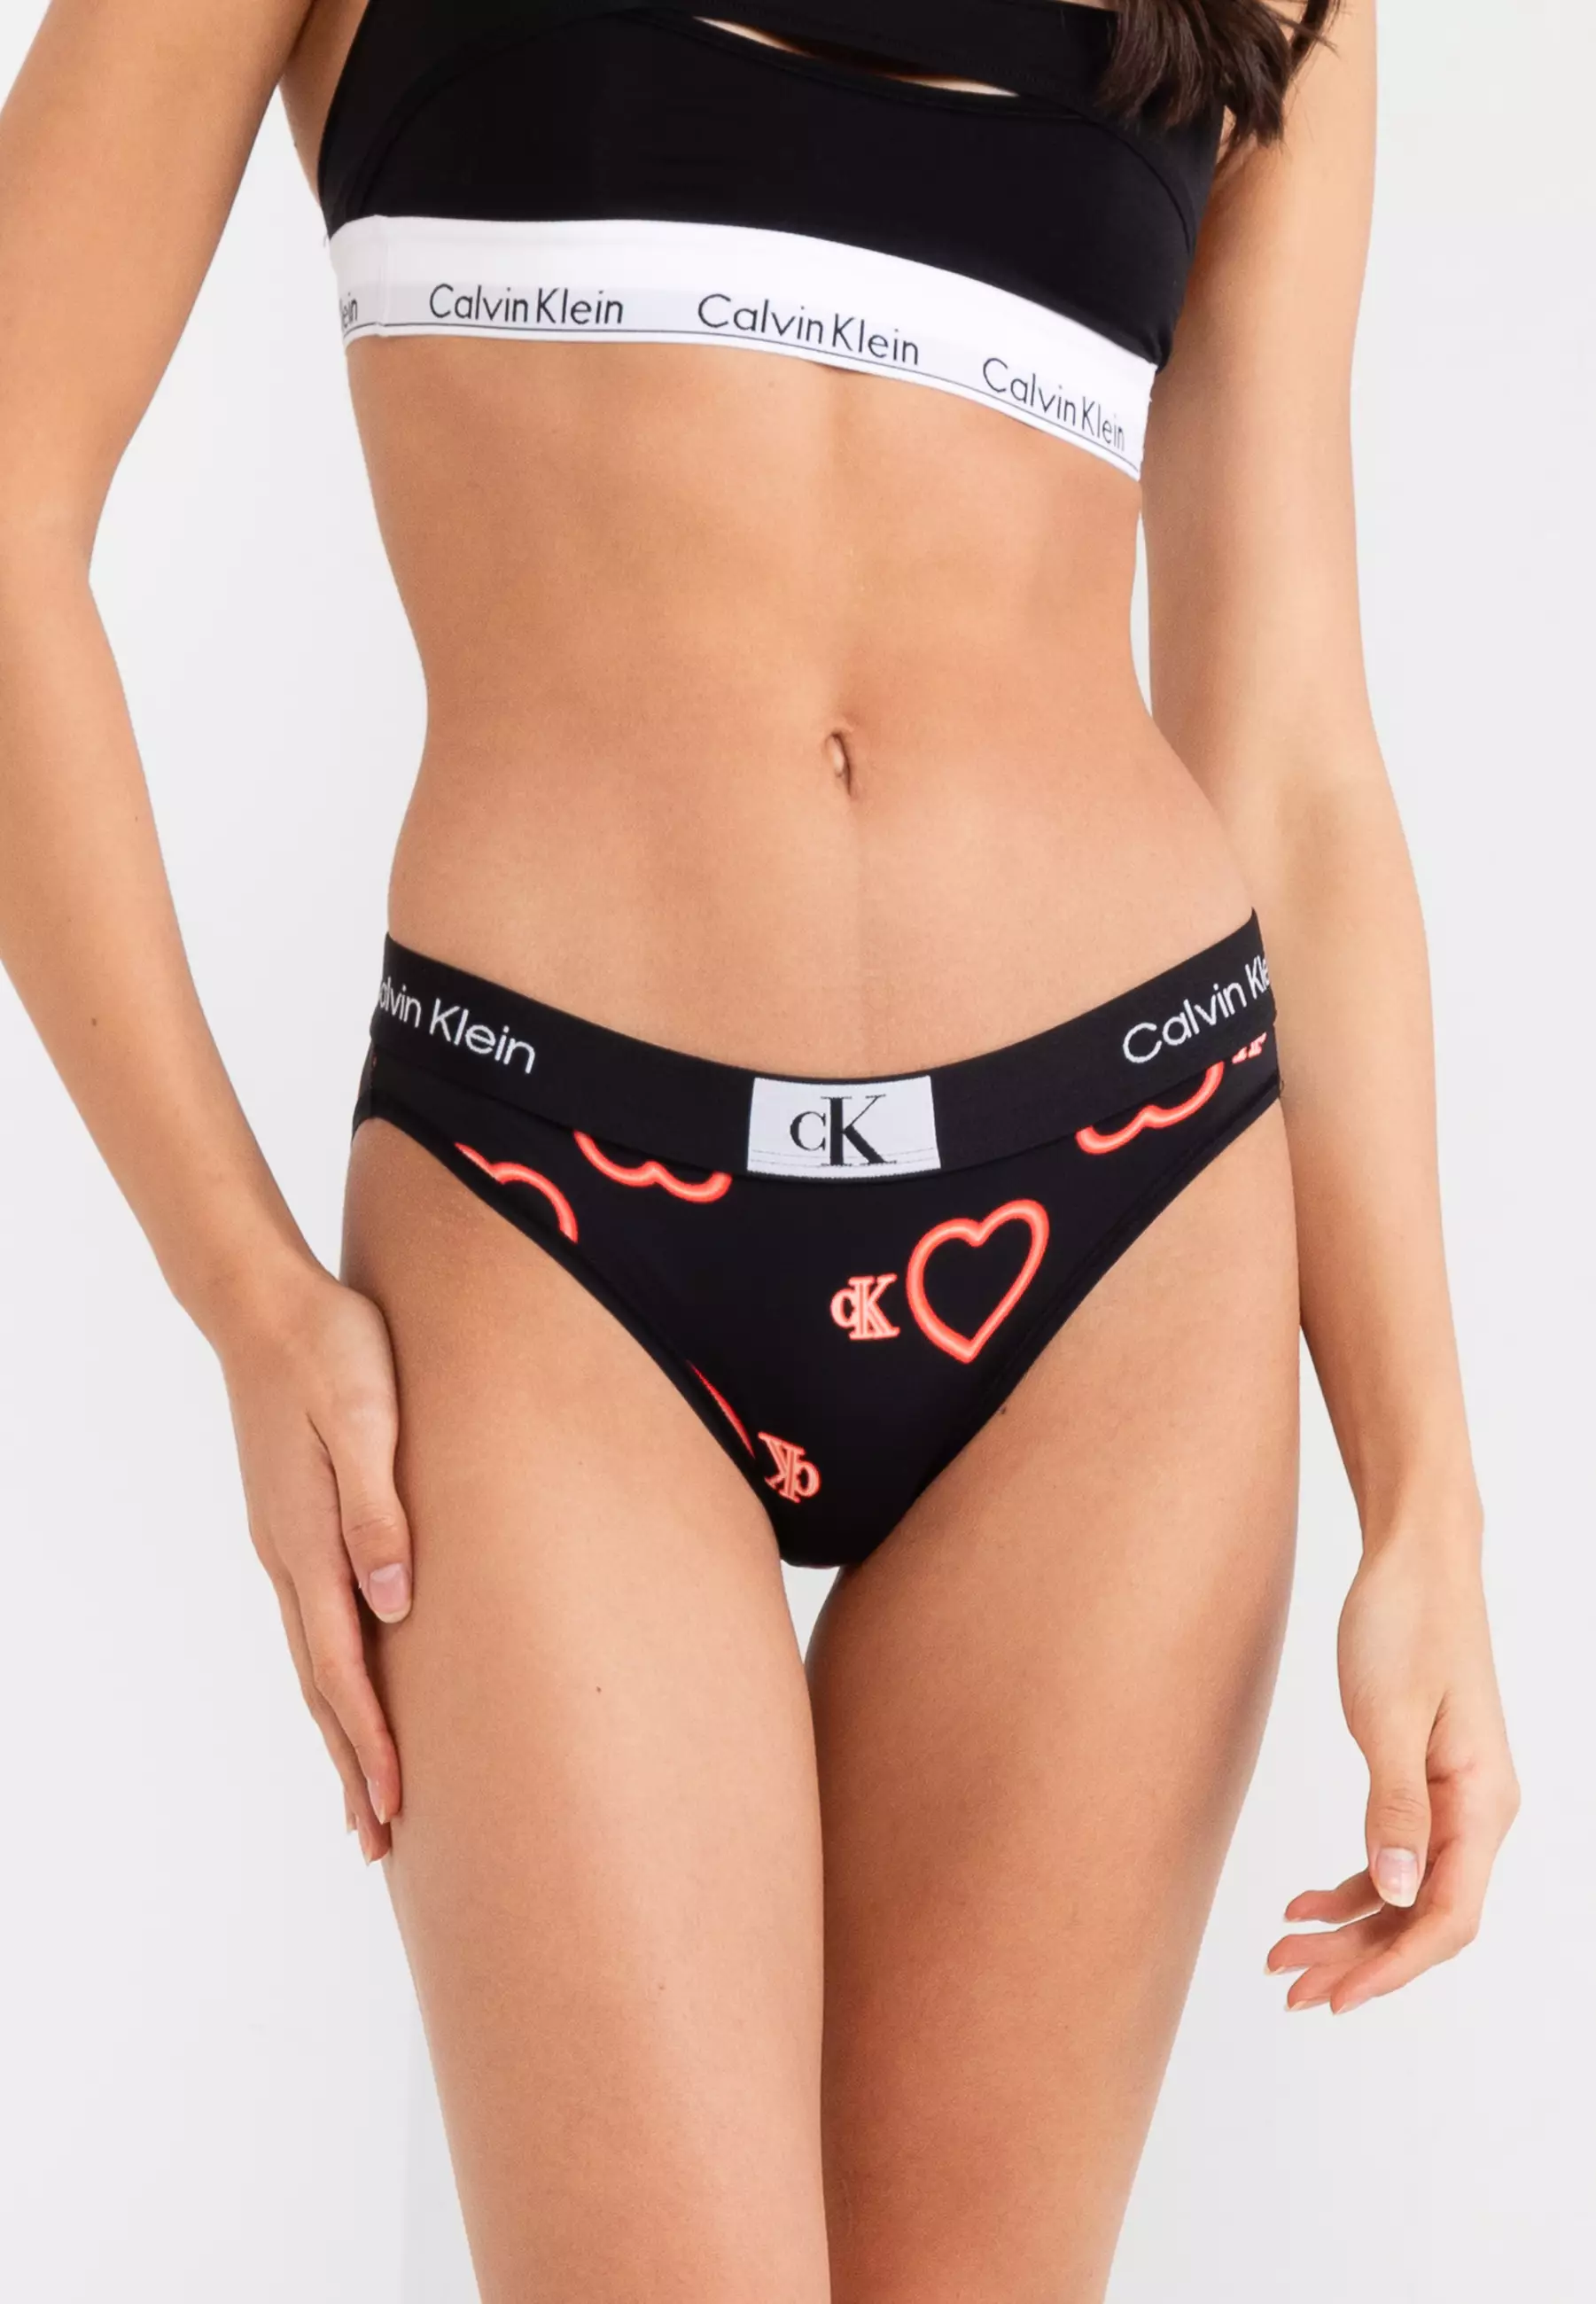 Modern Hearts Panties - Calvin Klein Underwear